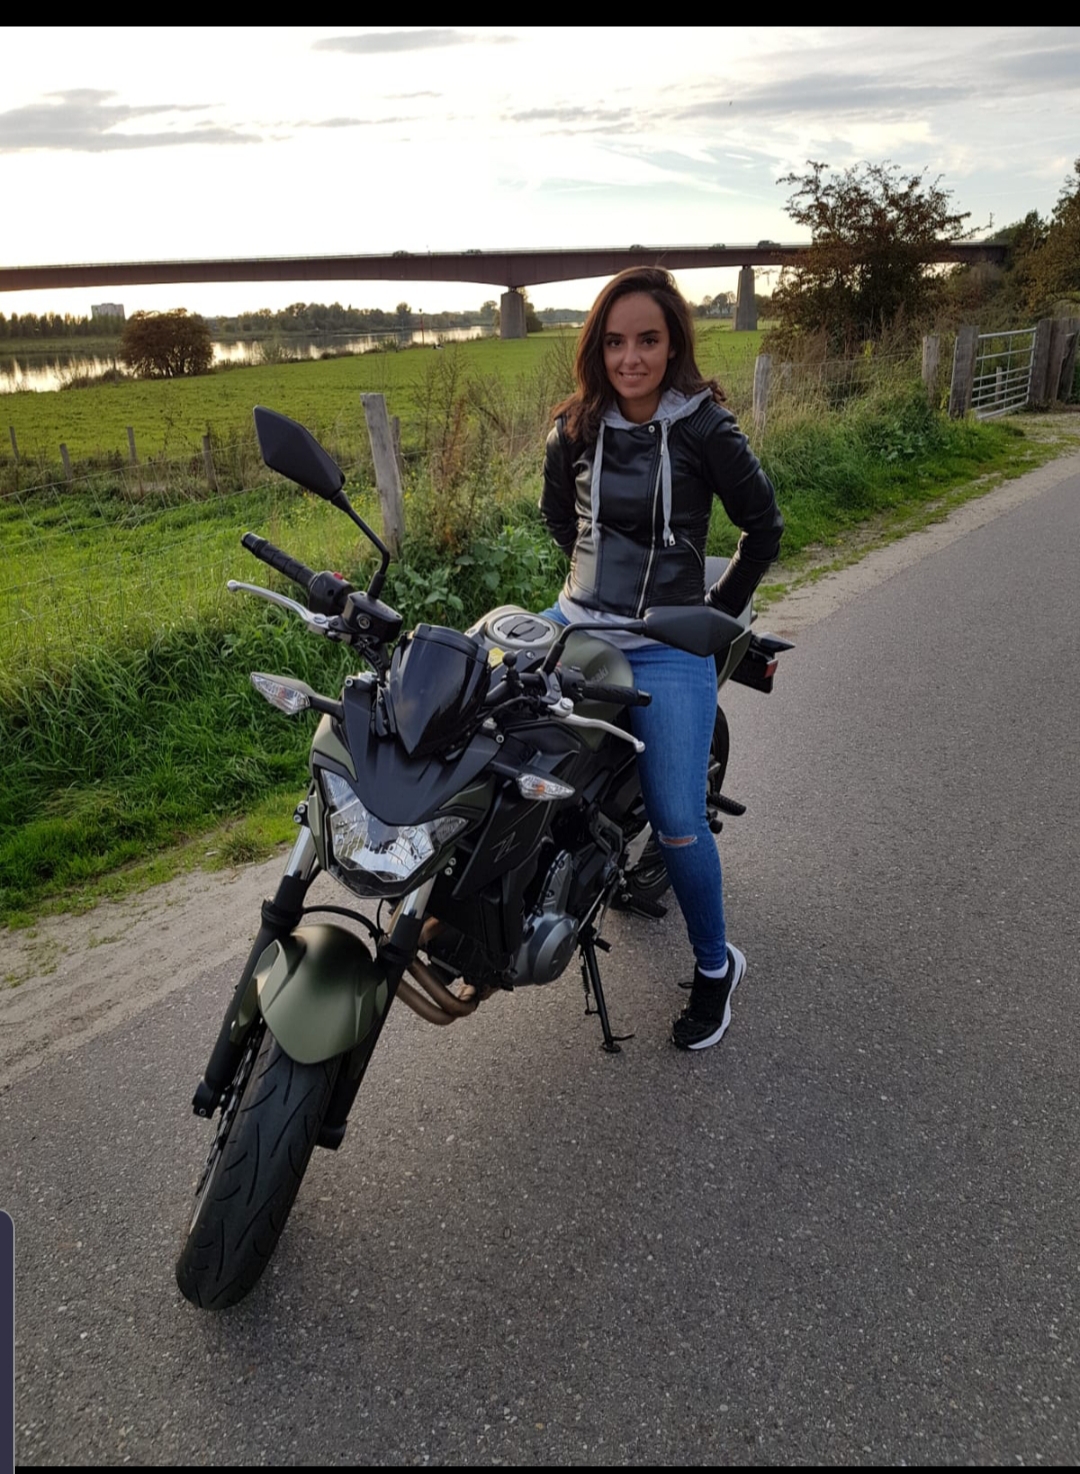 Dikra: 'De Marokkaanse vrouw die motorrijdt is zeldzaam' | Motormeiden